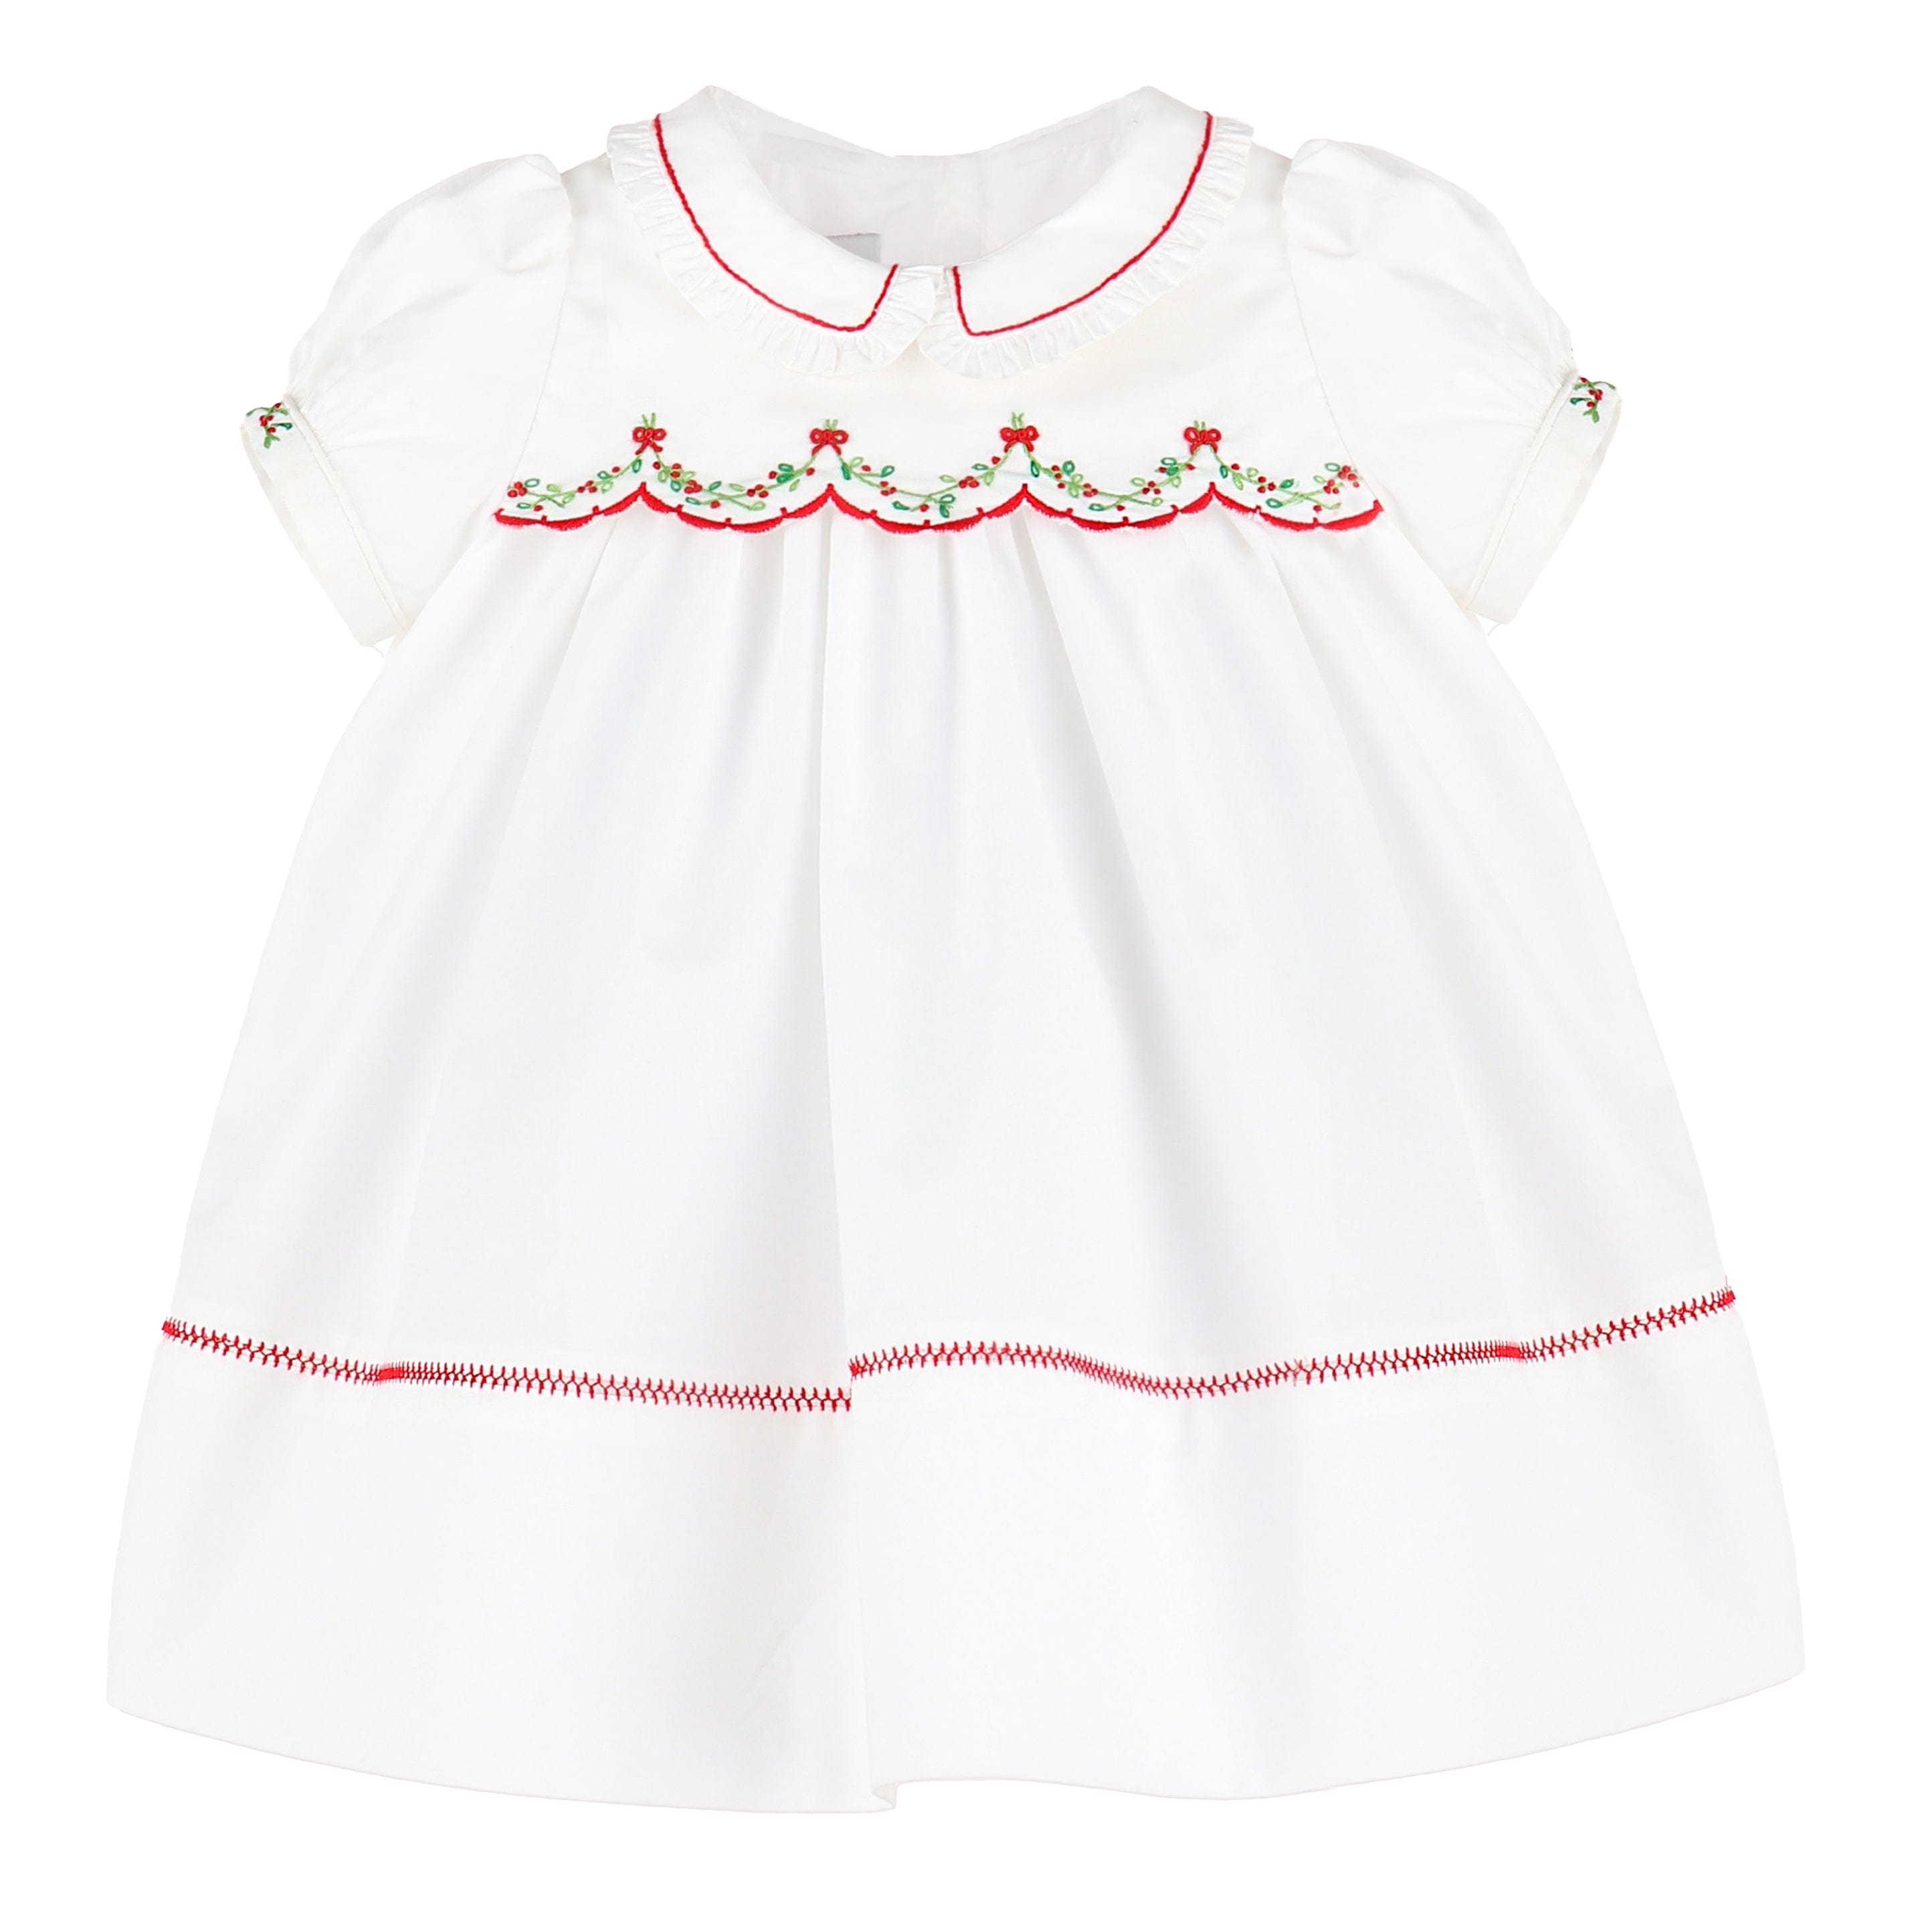 C&A - Casero & Associates Casero & Associates Merrymaker Scallop Dress - Little Miss Muffin Children & Home